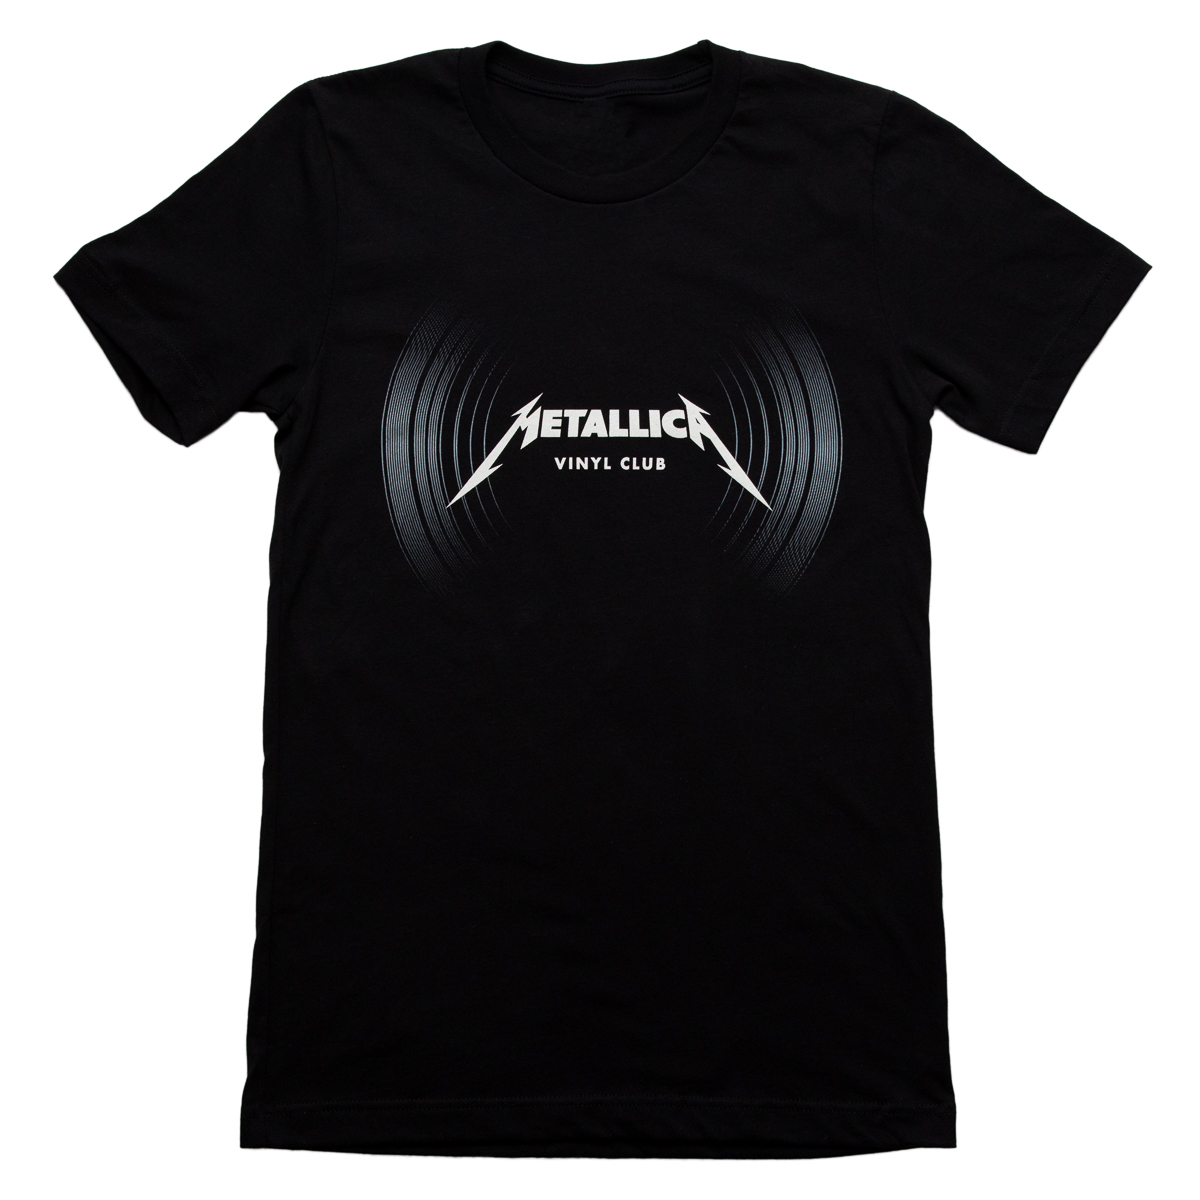 Metallica Vinyl Club T-Shirt | Metallica.com | Metallica.com